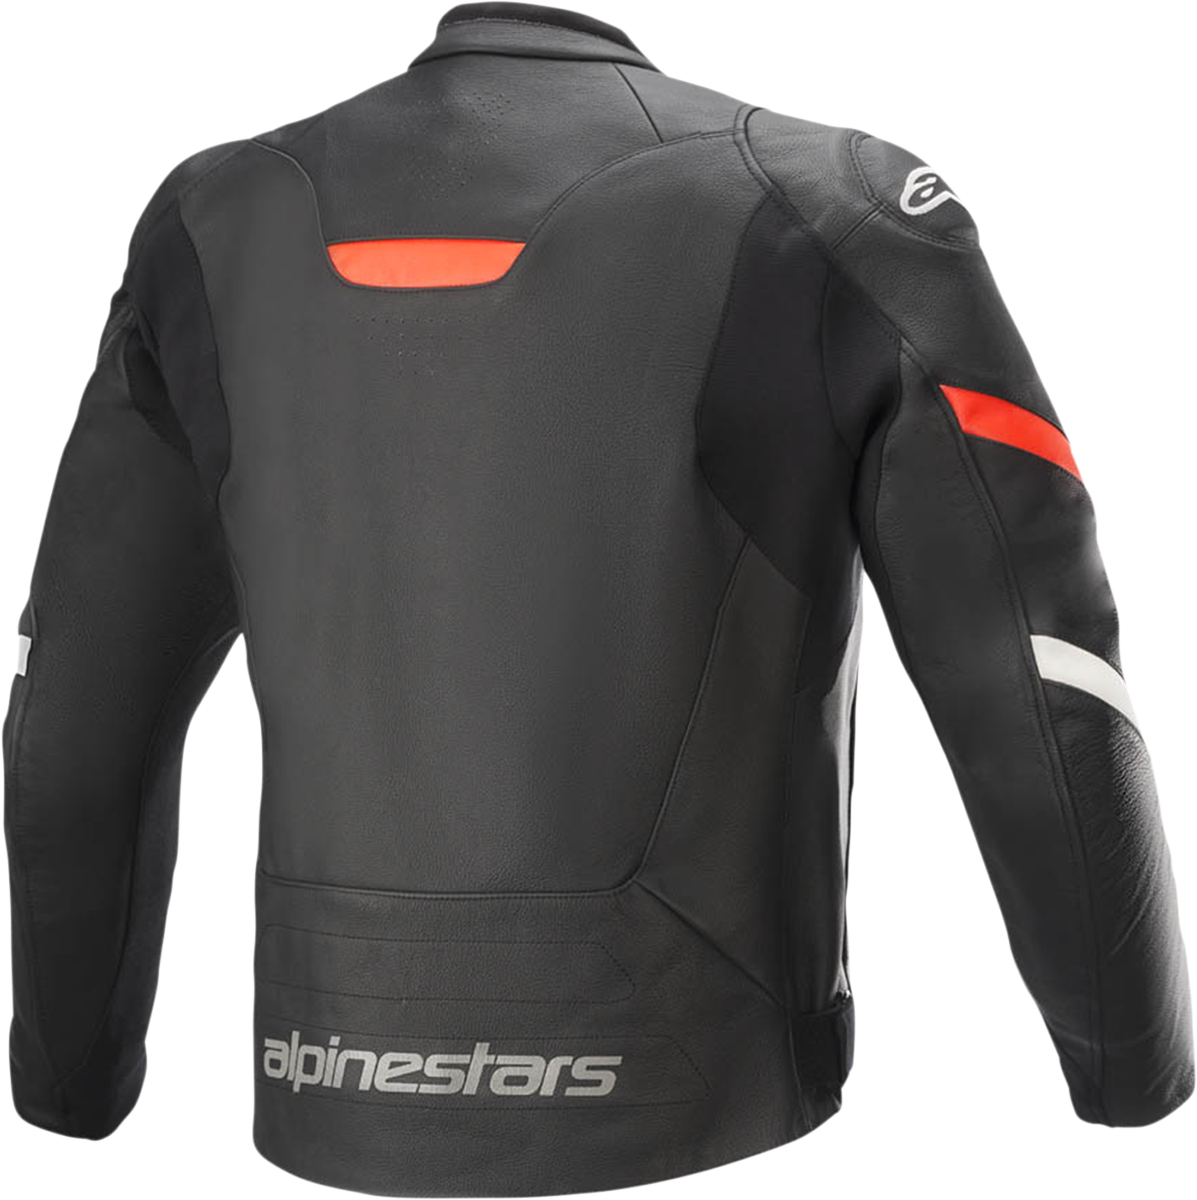 ALPINESTARS Faster v2 Leather Jacket - Black/Red - US 44 / EU 54 3103521-1030-54